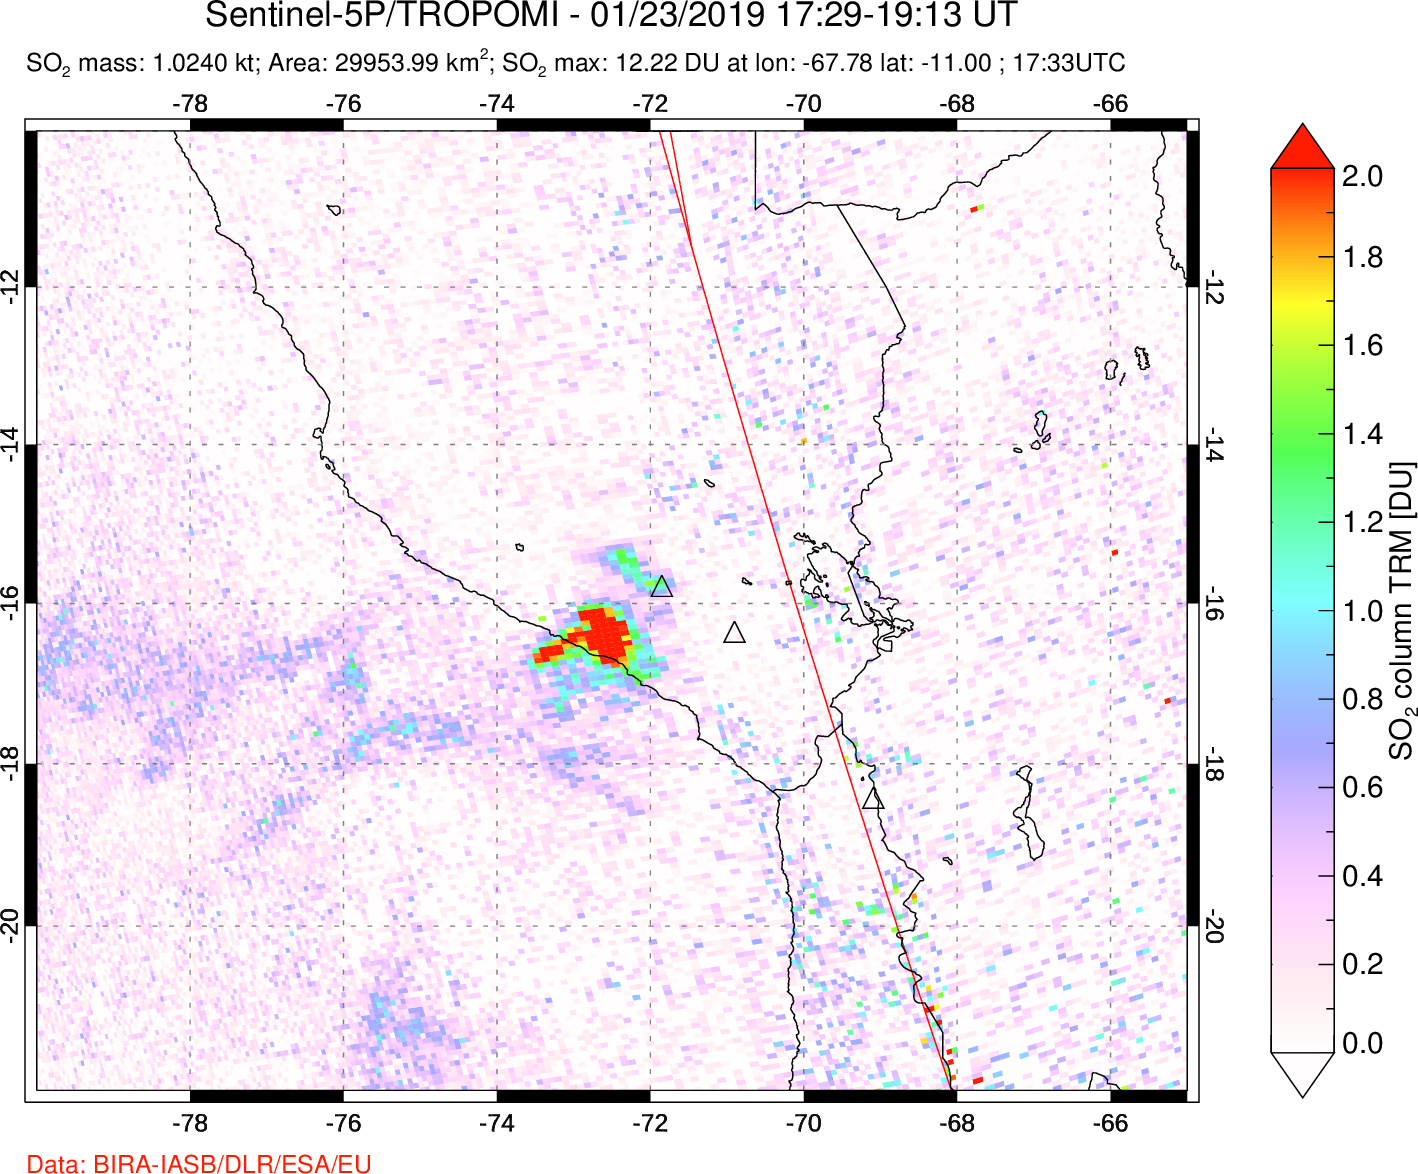 A sulfur dioxide image over Peru on Jan 23, 2019.